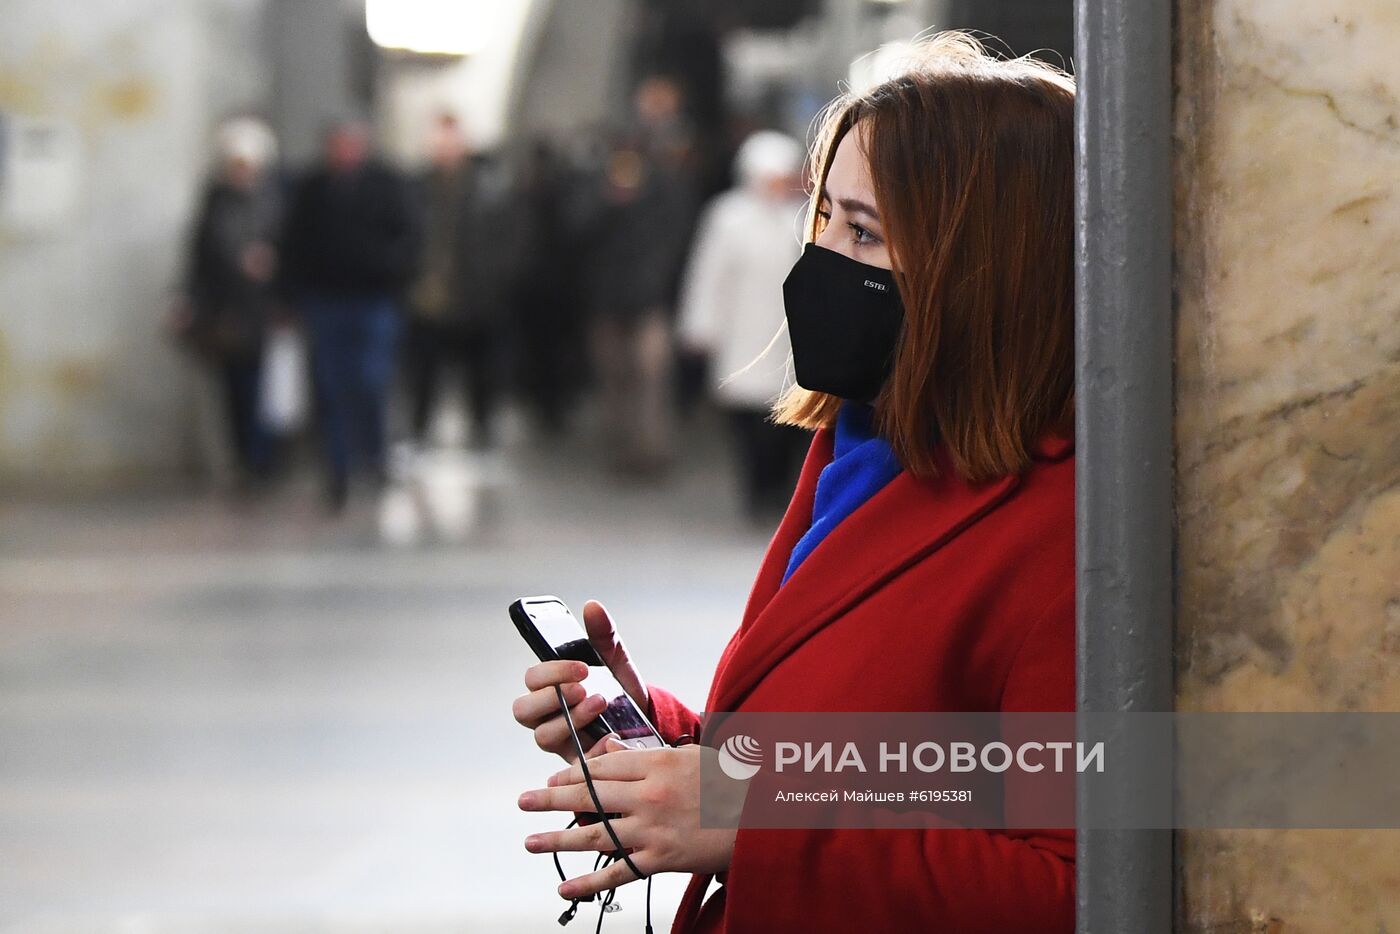 В Москве могут ввести дополнительные меры по борьбе с коронавирусом